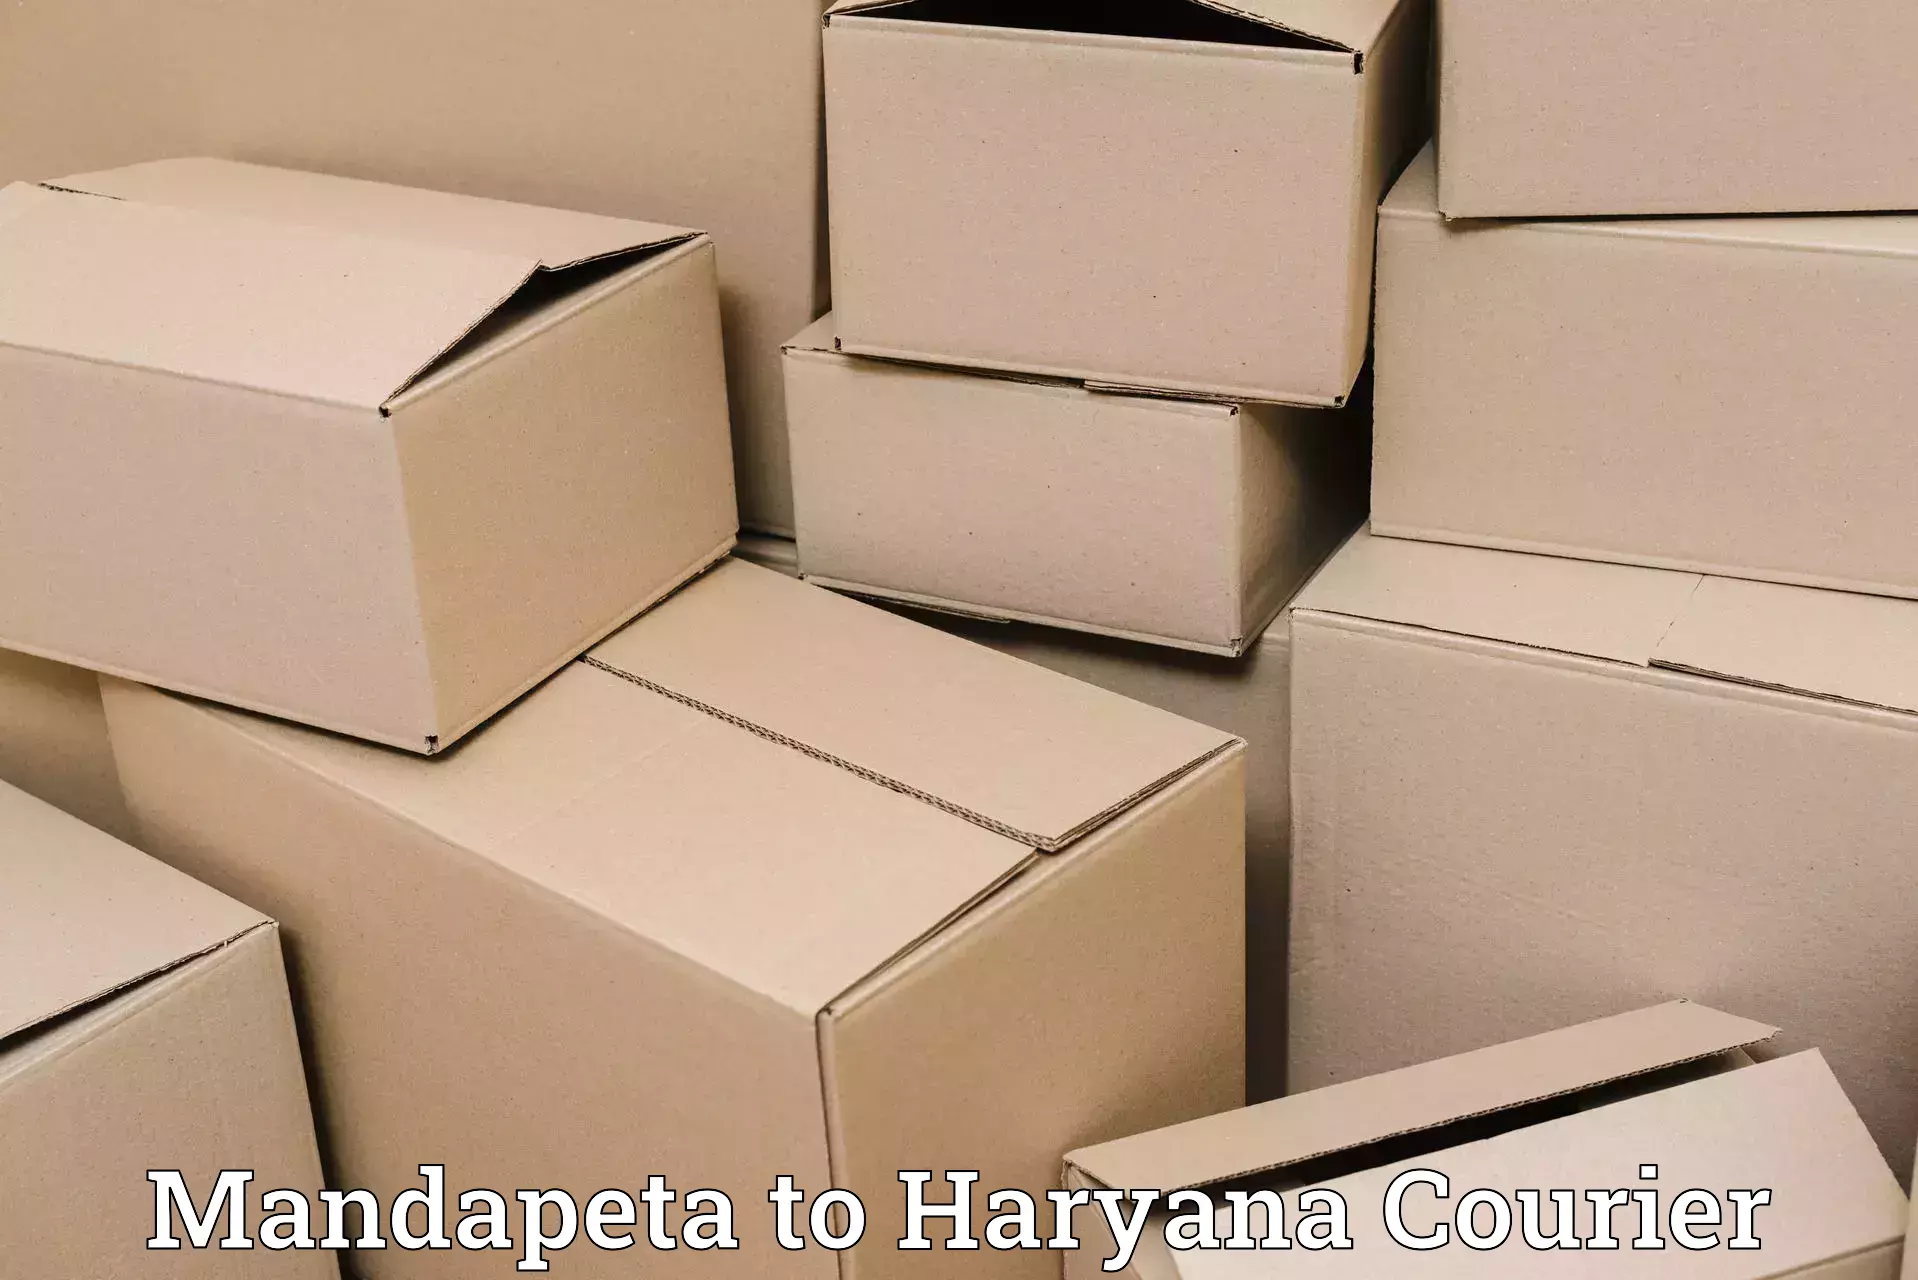 Bulk courier orders Mandapeta to Jhajjar